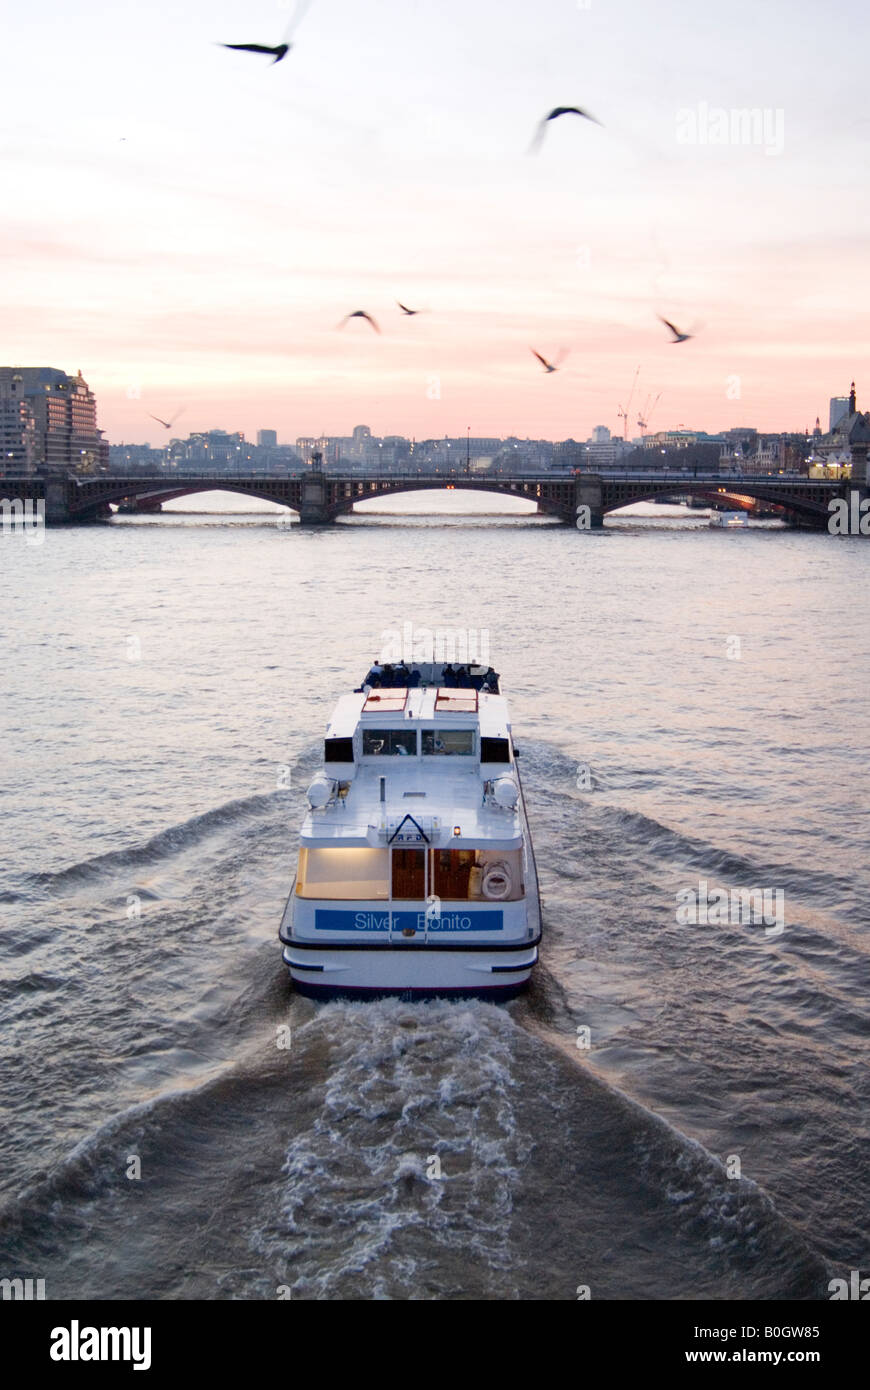 Voyage en bateau sur la Tamise à Londres Angleterre Royaume-uni crépuscule Banque D'Images